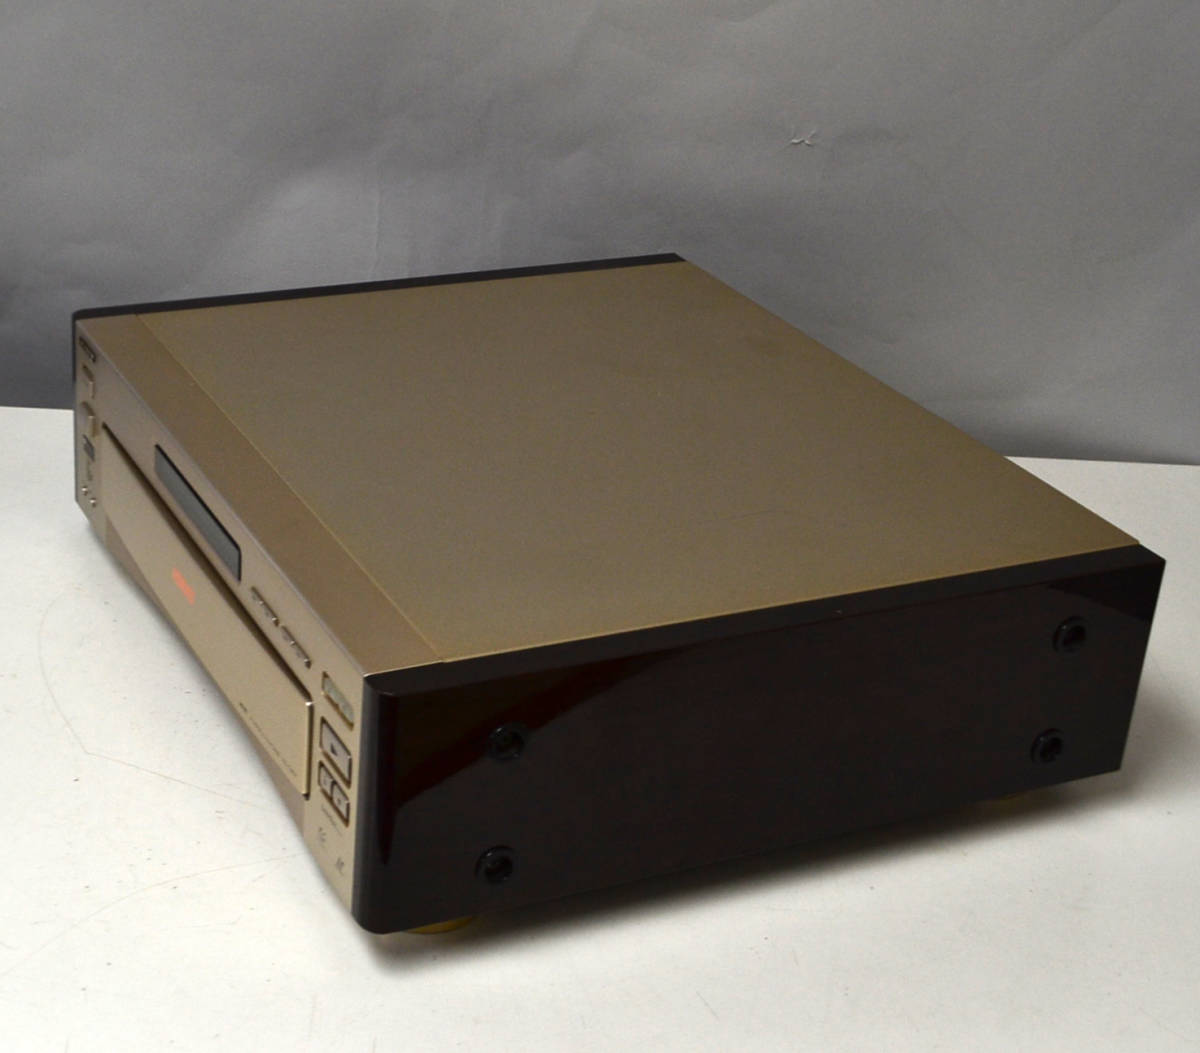 LaserDisc Database - Hardware - Sony - HIL-C2EX